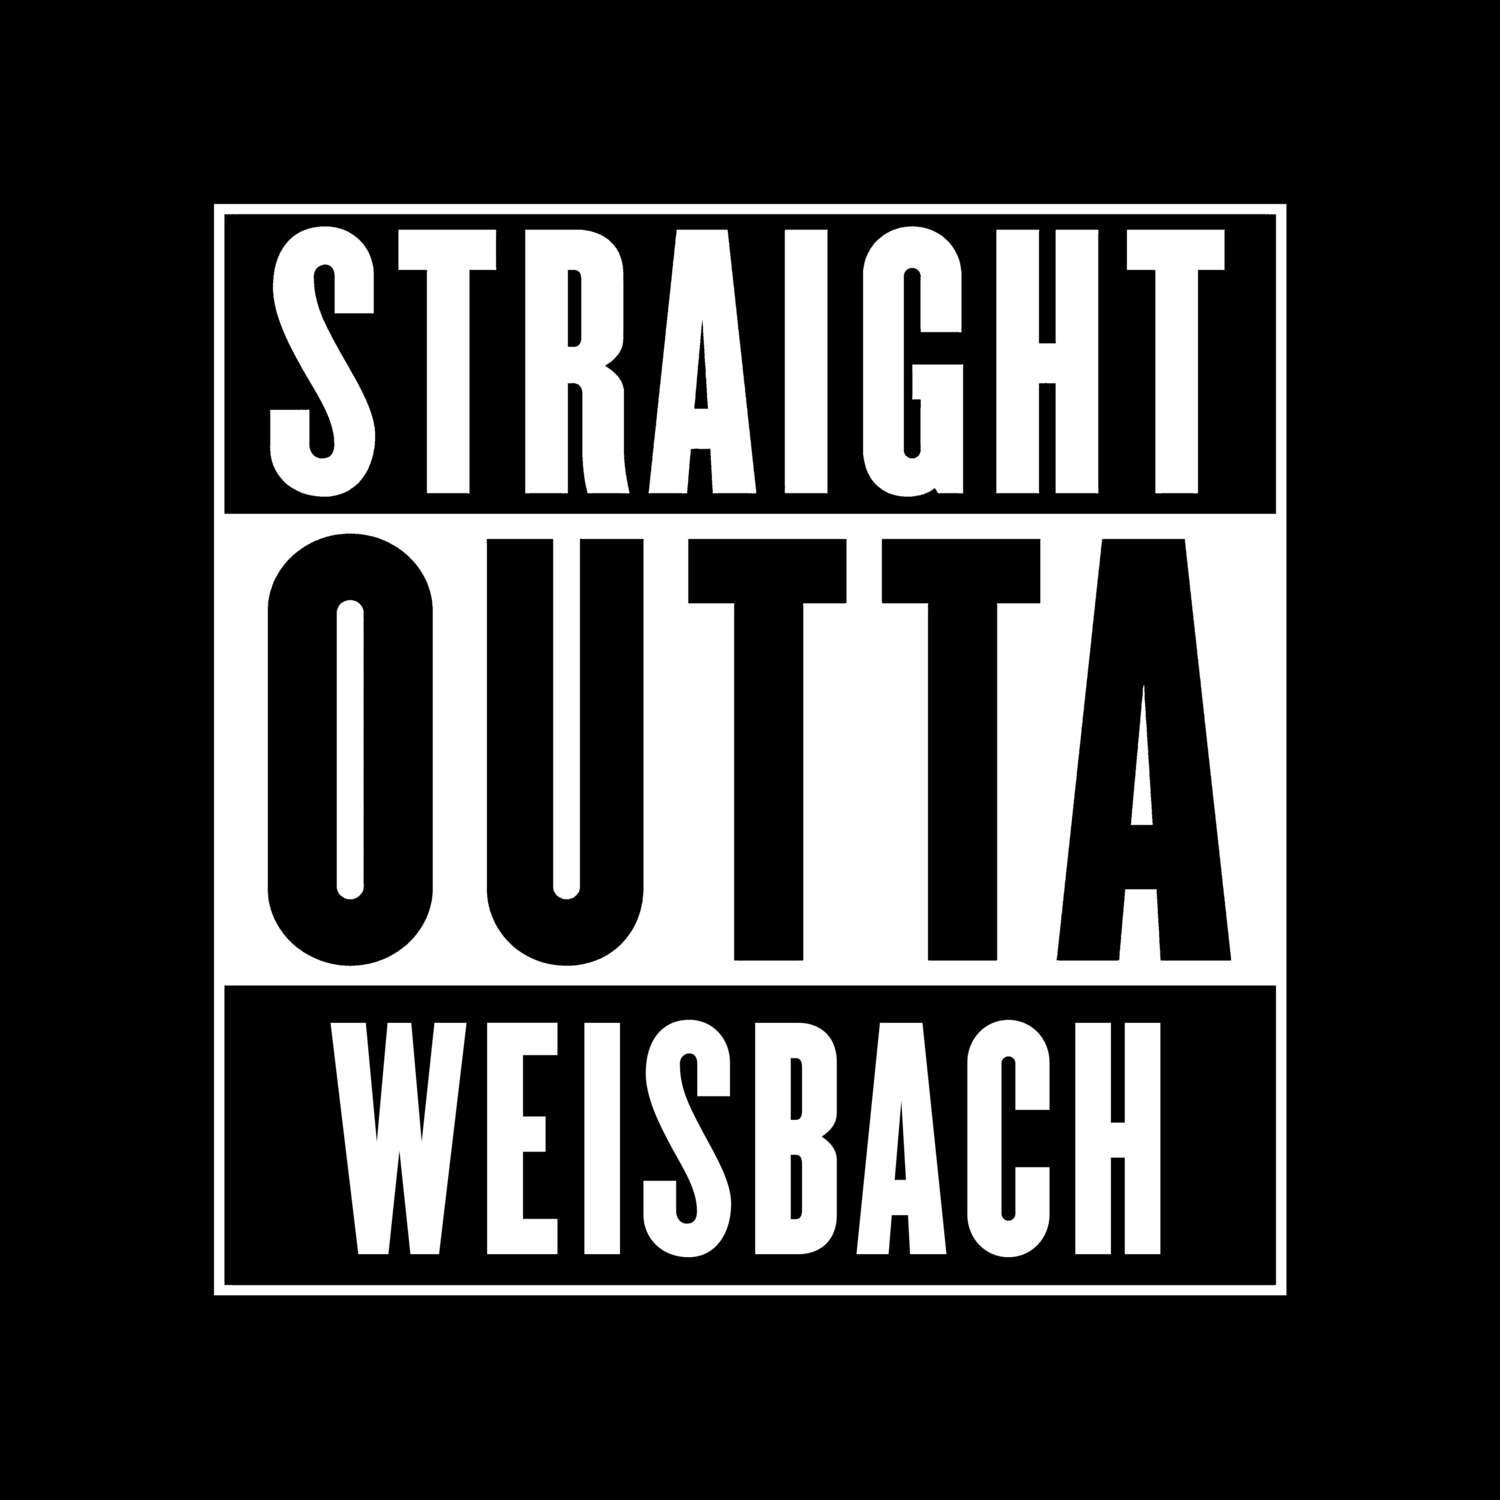 Weisbach T-Shirt »Straight Outta«